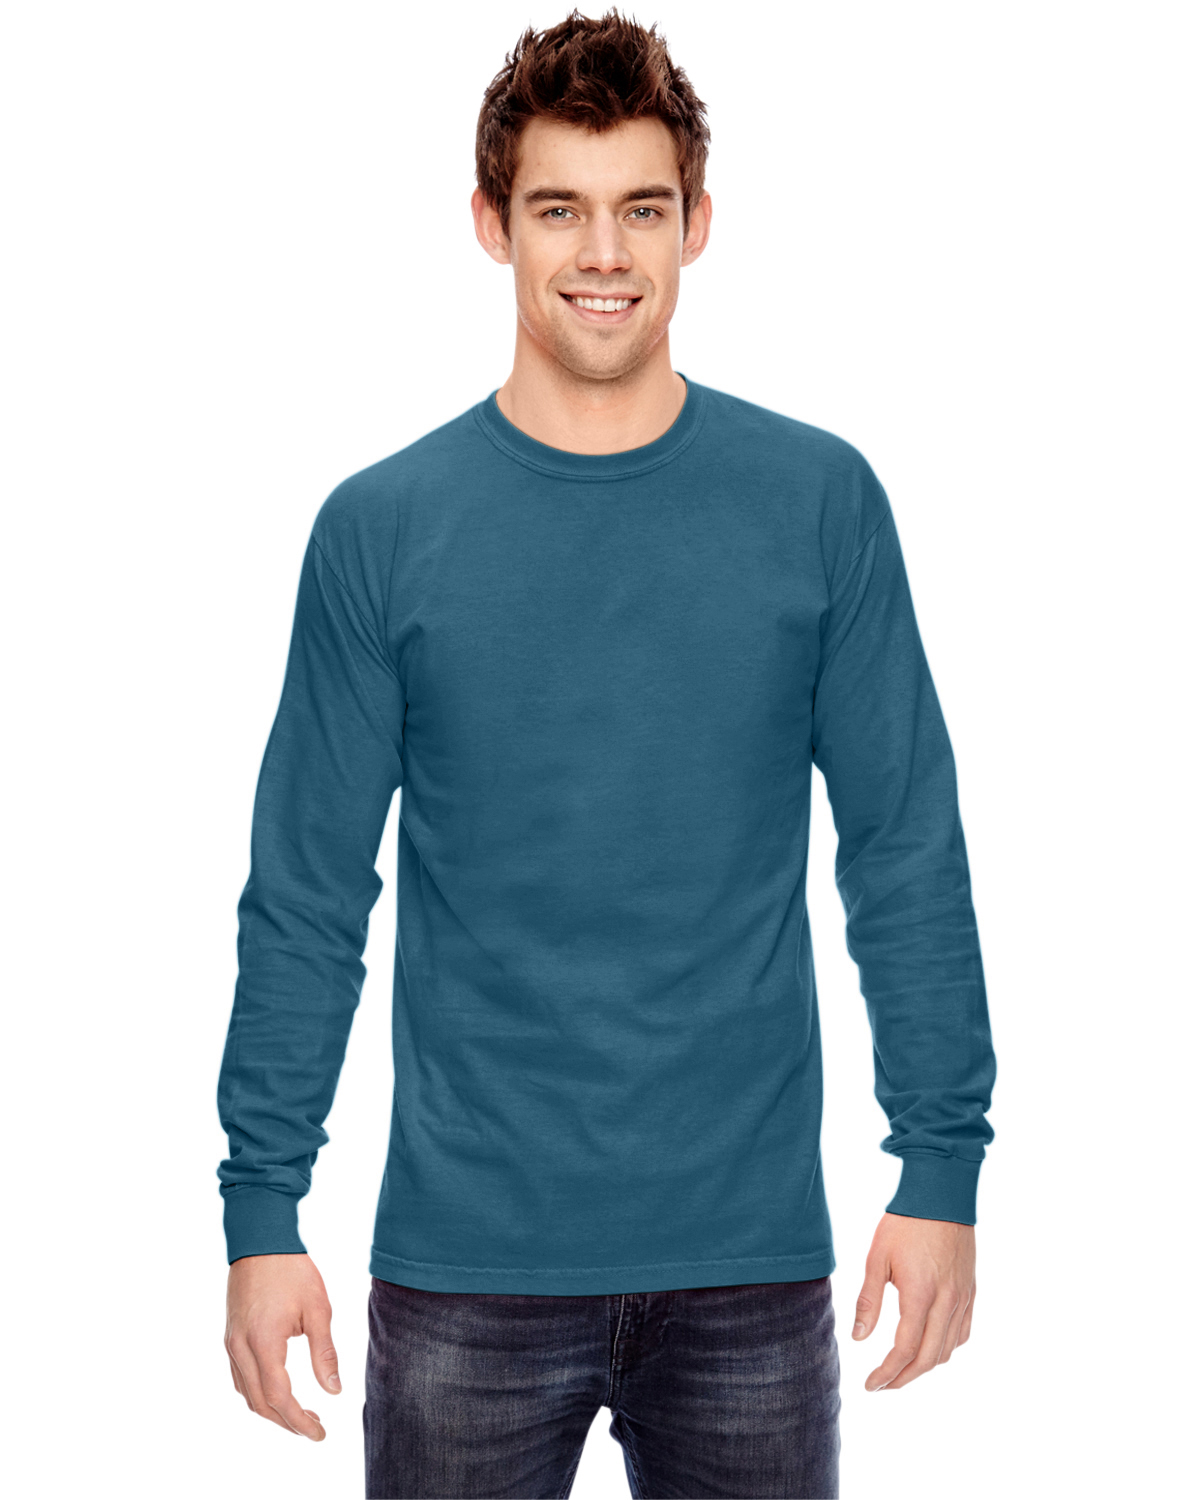 S05615 - Breeze - Adult RING SPUN Combed Cotton Long Sleeve Crewneck T-Shirt